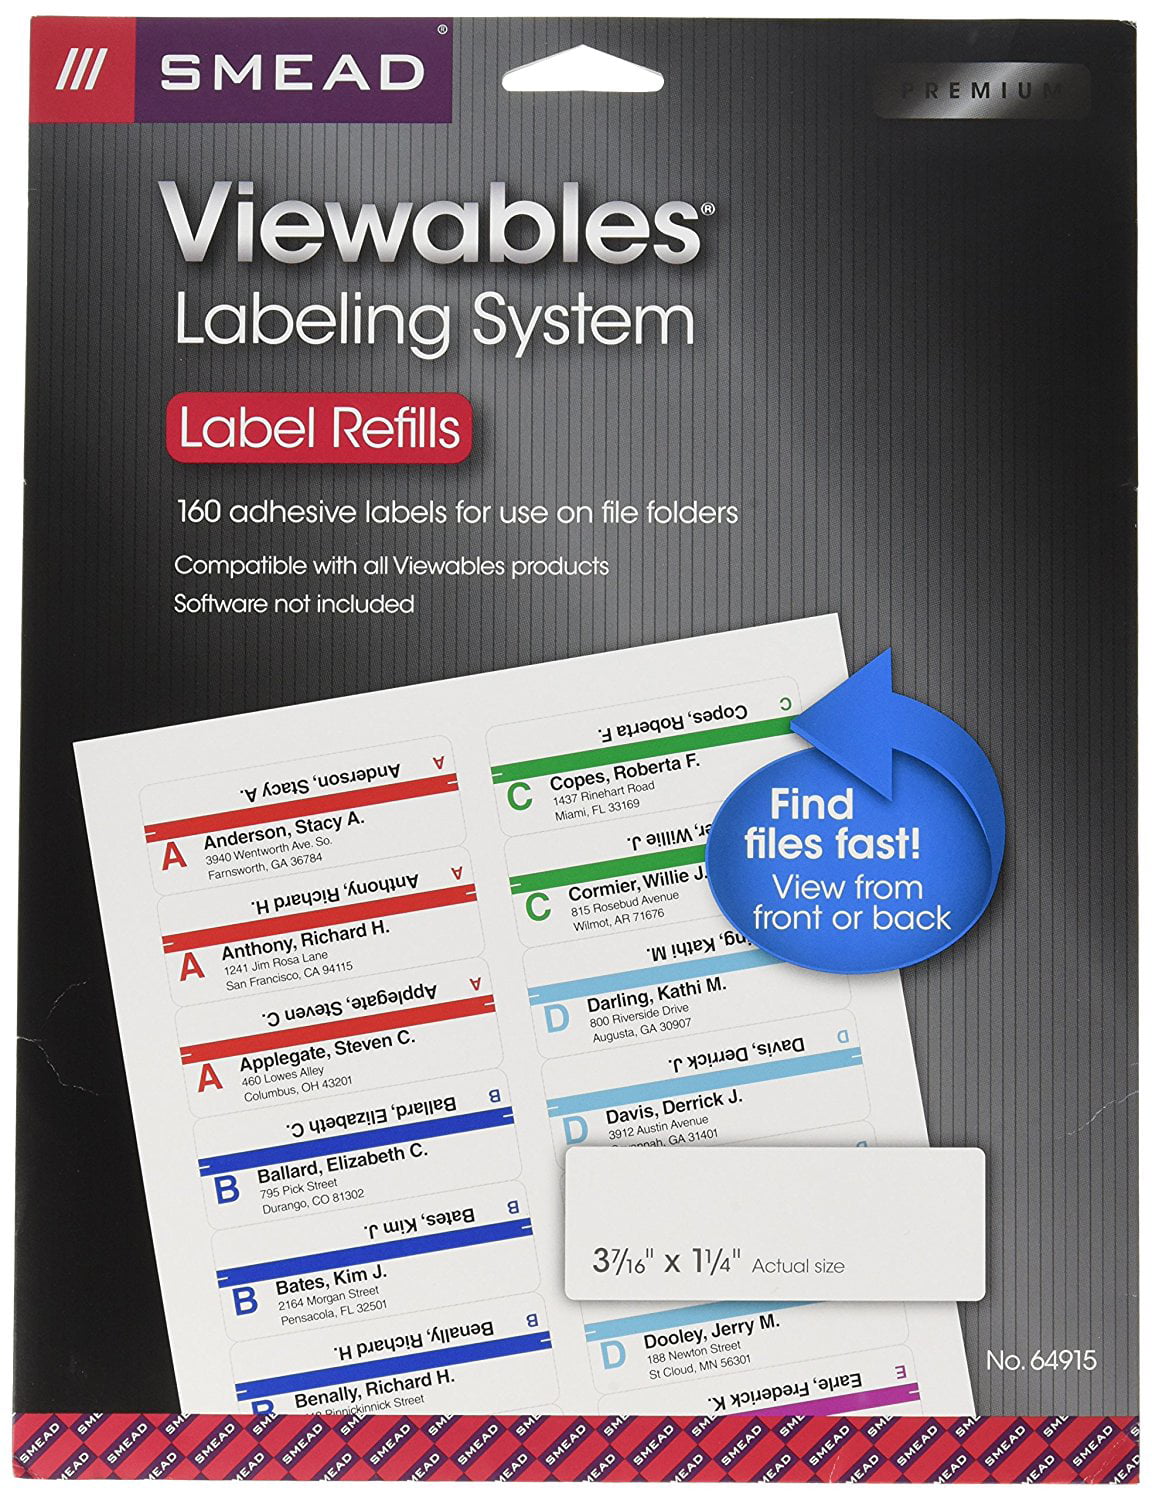 smead-viewables-label-template